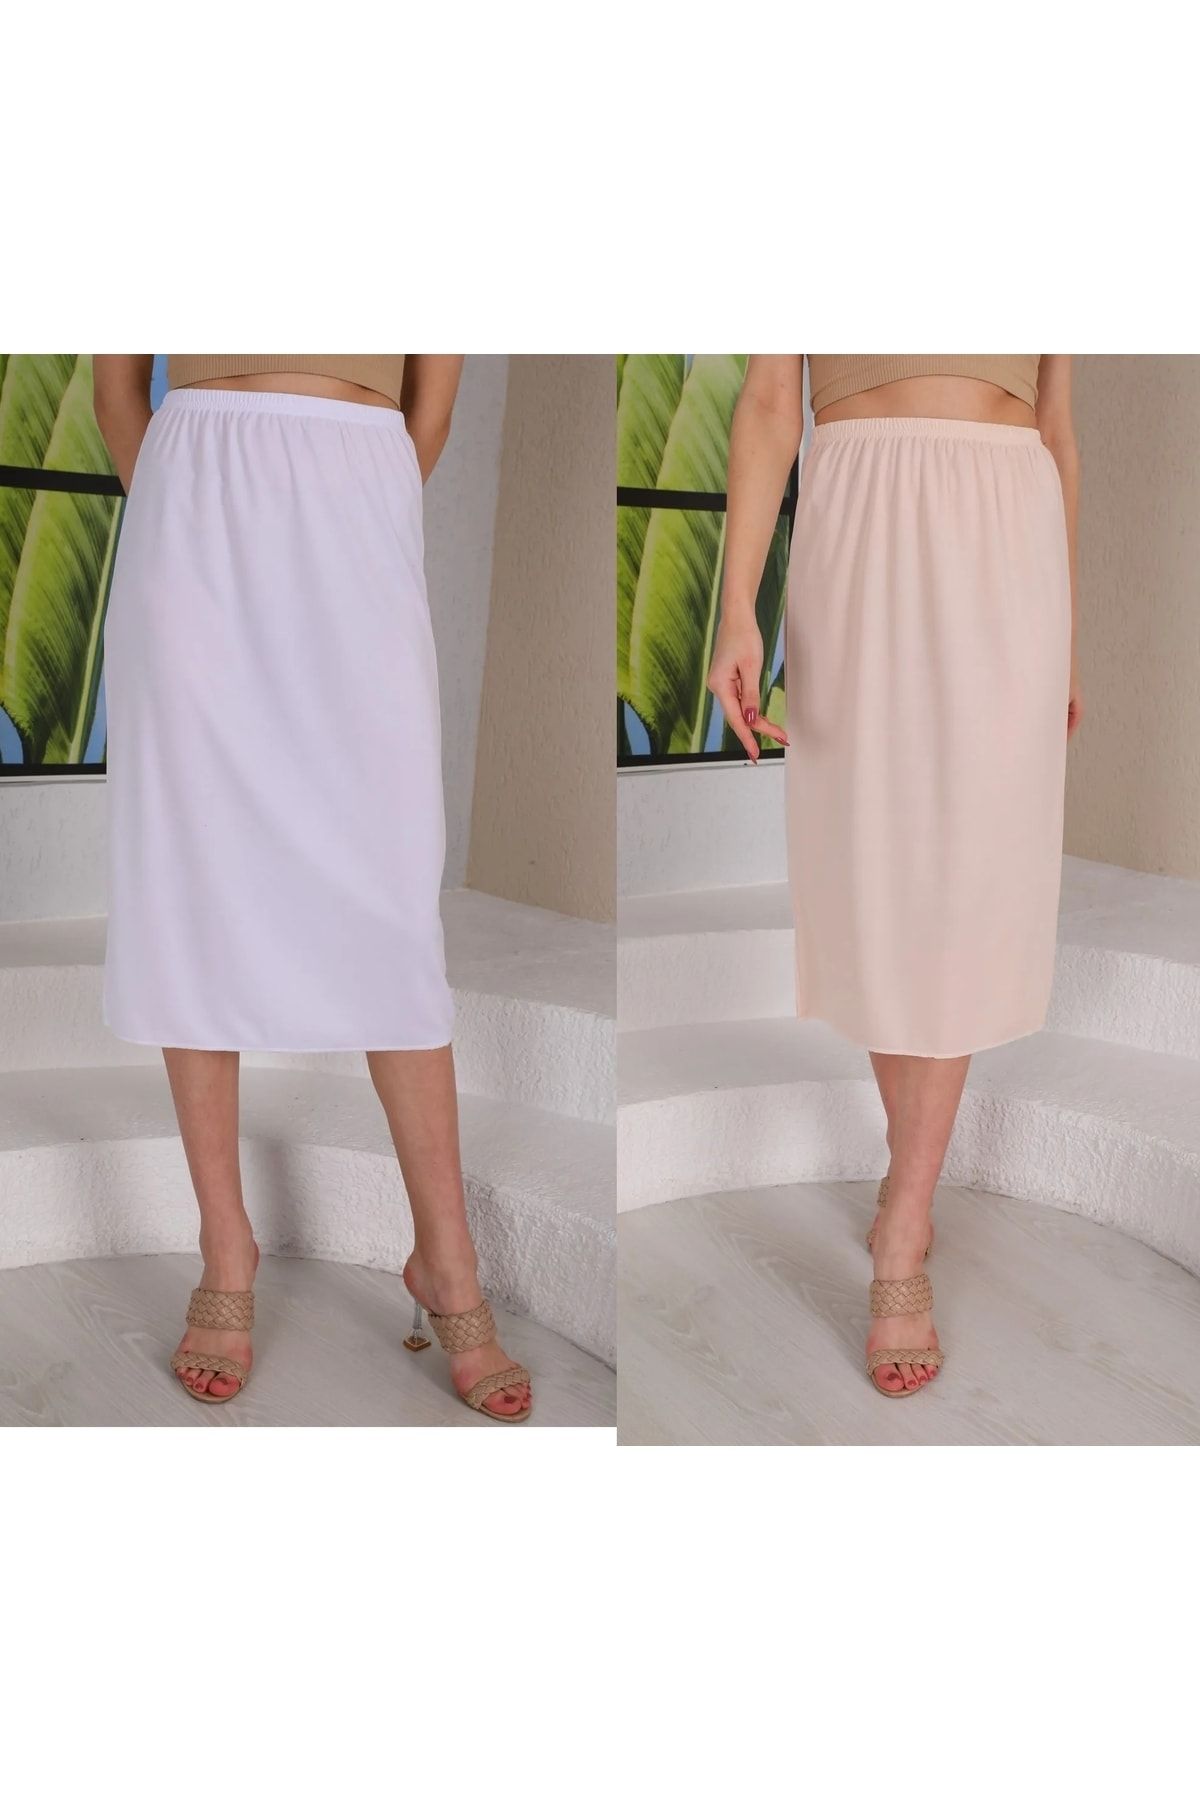 medipek Long Full Length Skirt Lining Underskirt Petticoat Underwear Set of  2 - Trendyol